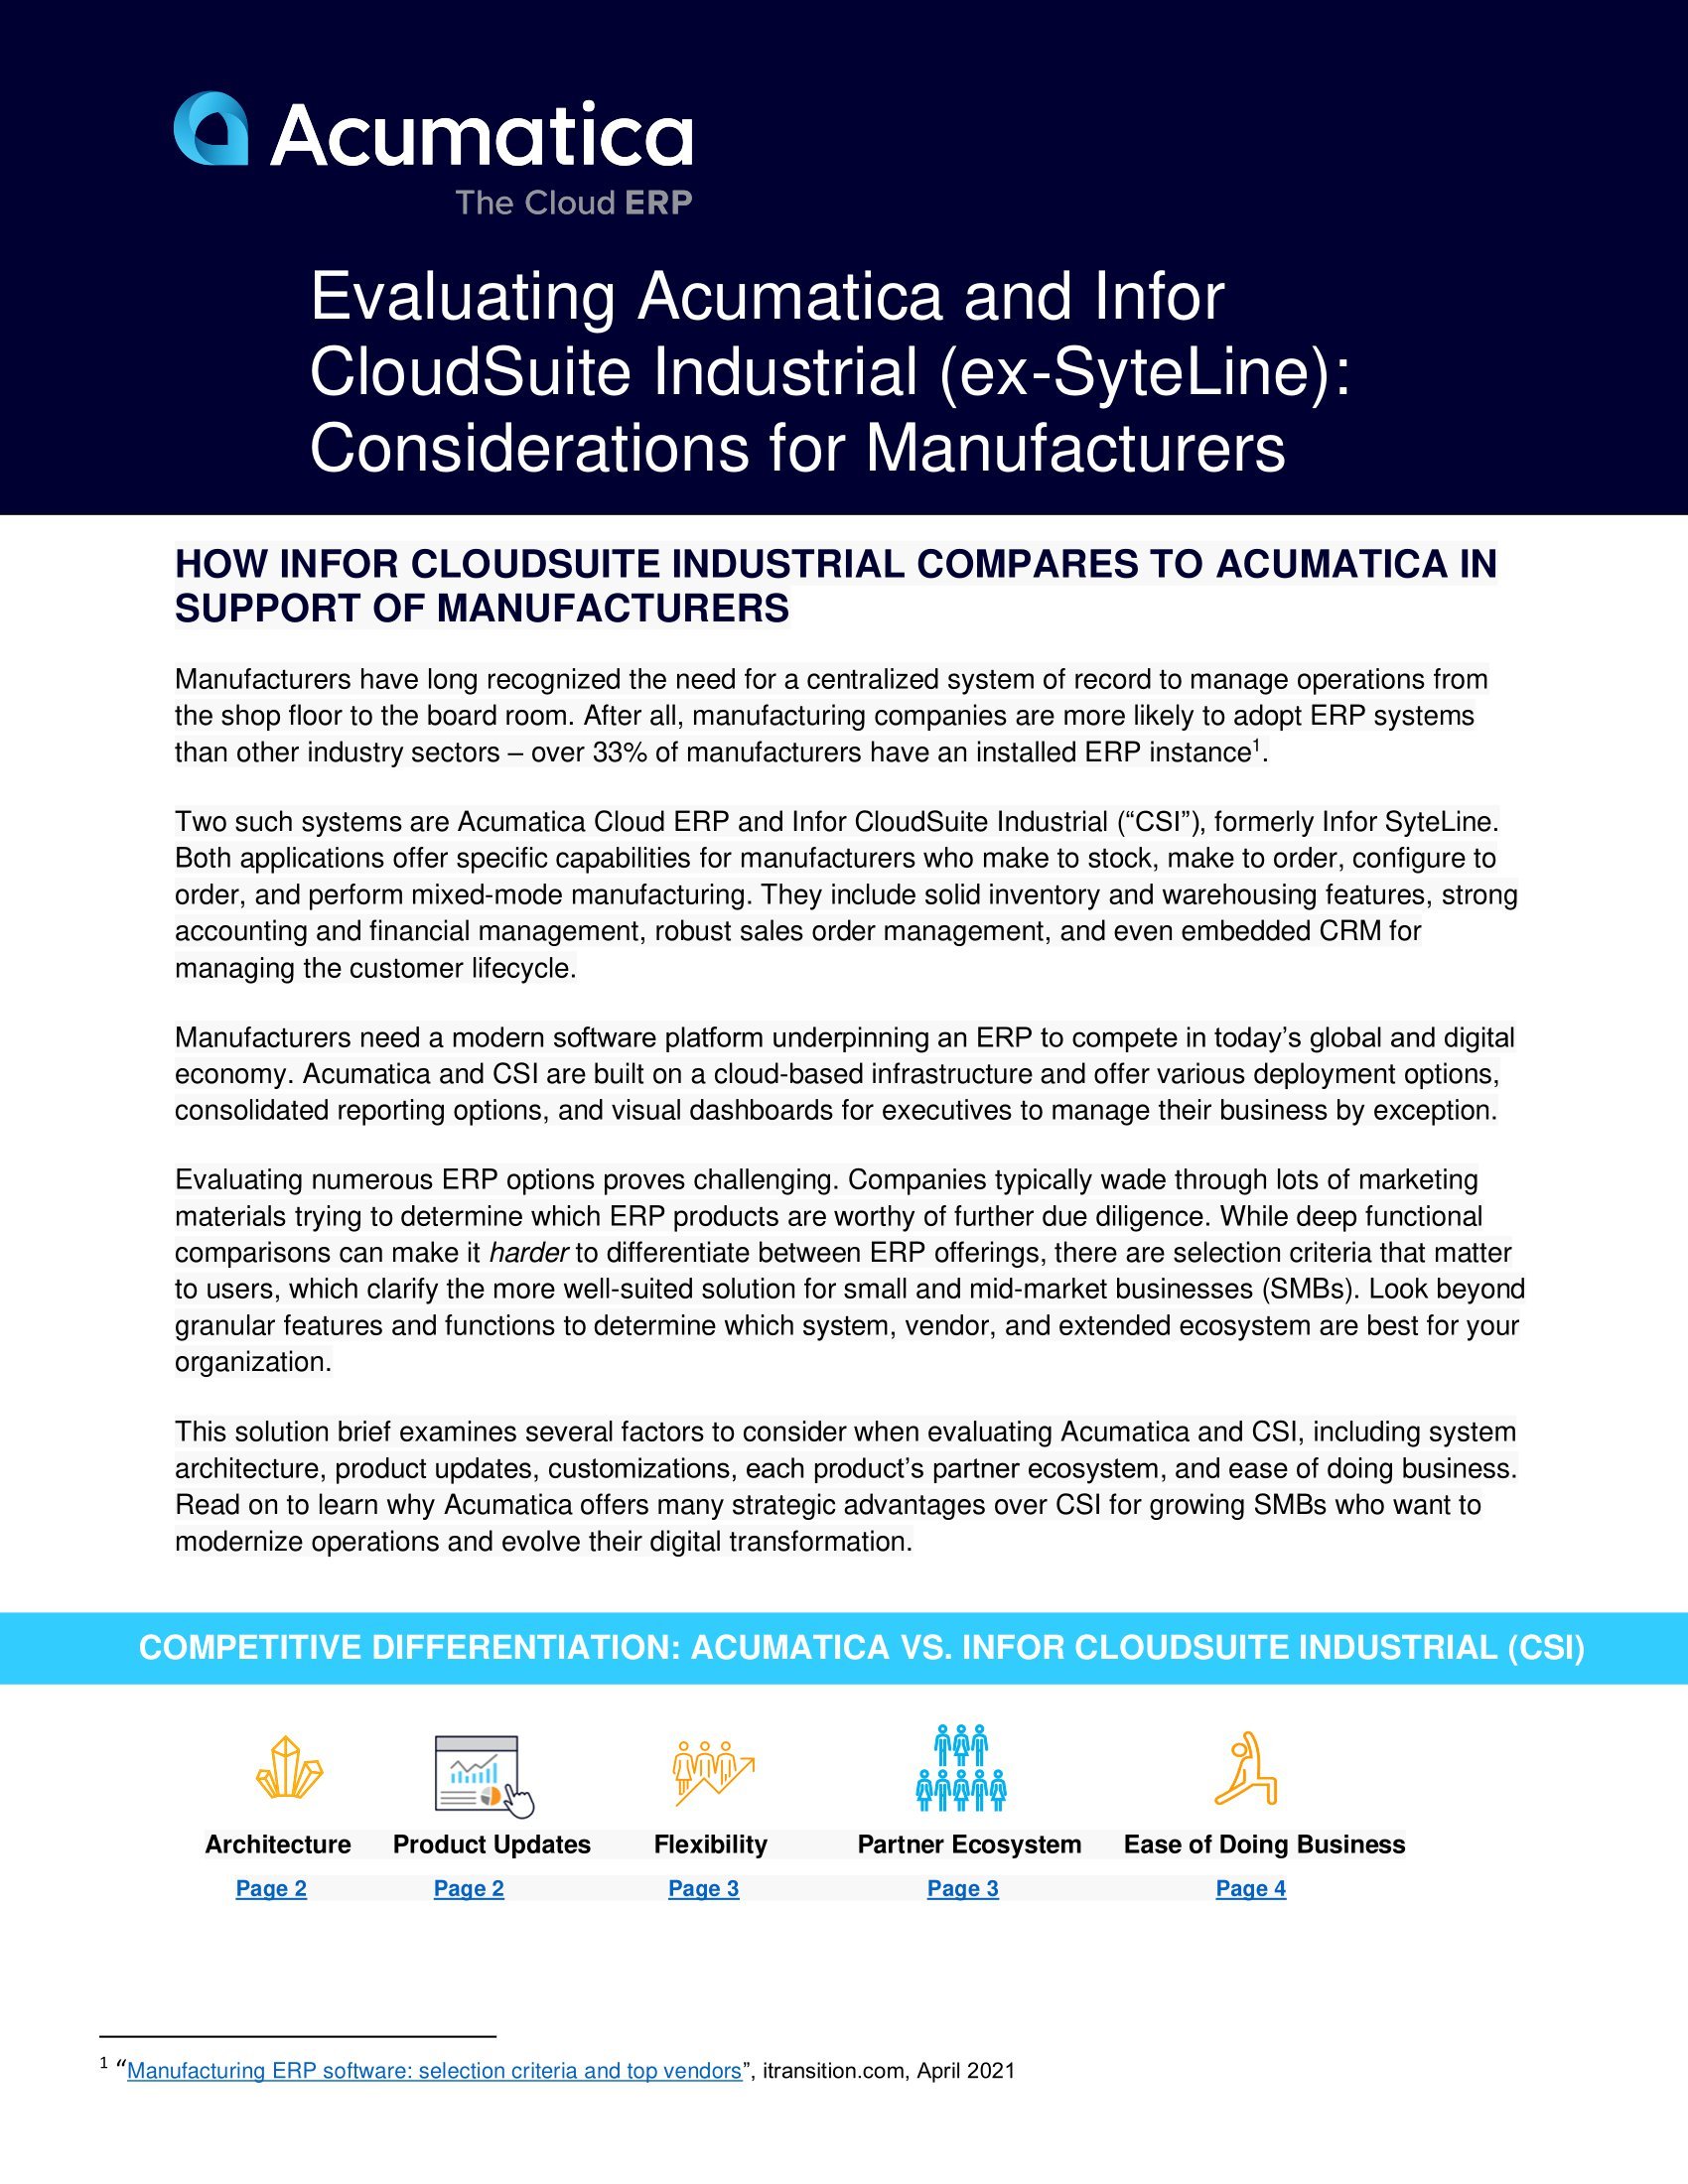 Acumatica vs. Infor CloudSuite Industrial : Quel système ERP les industriels doivent-ils choisir ?